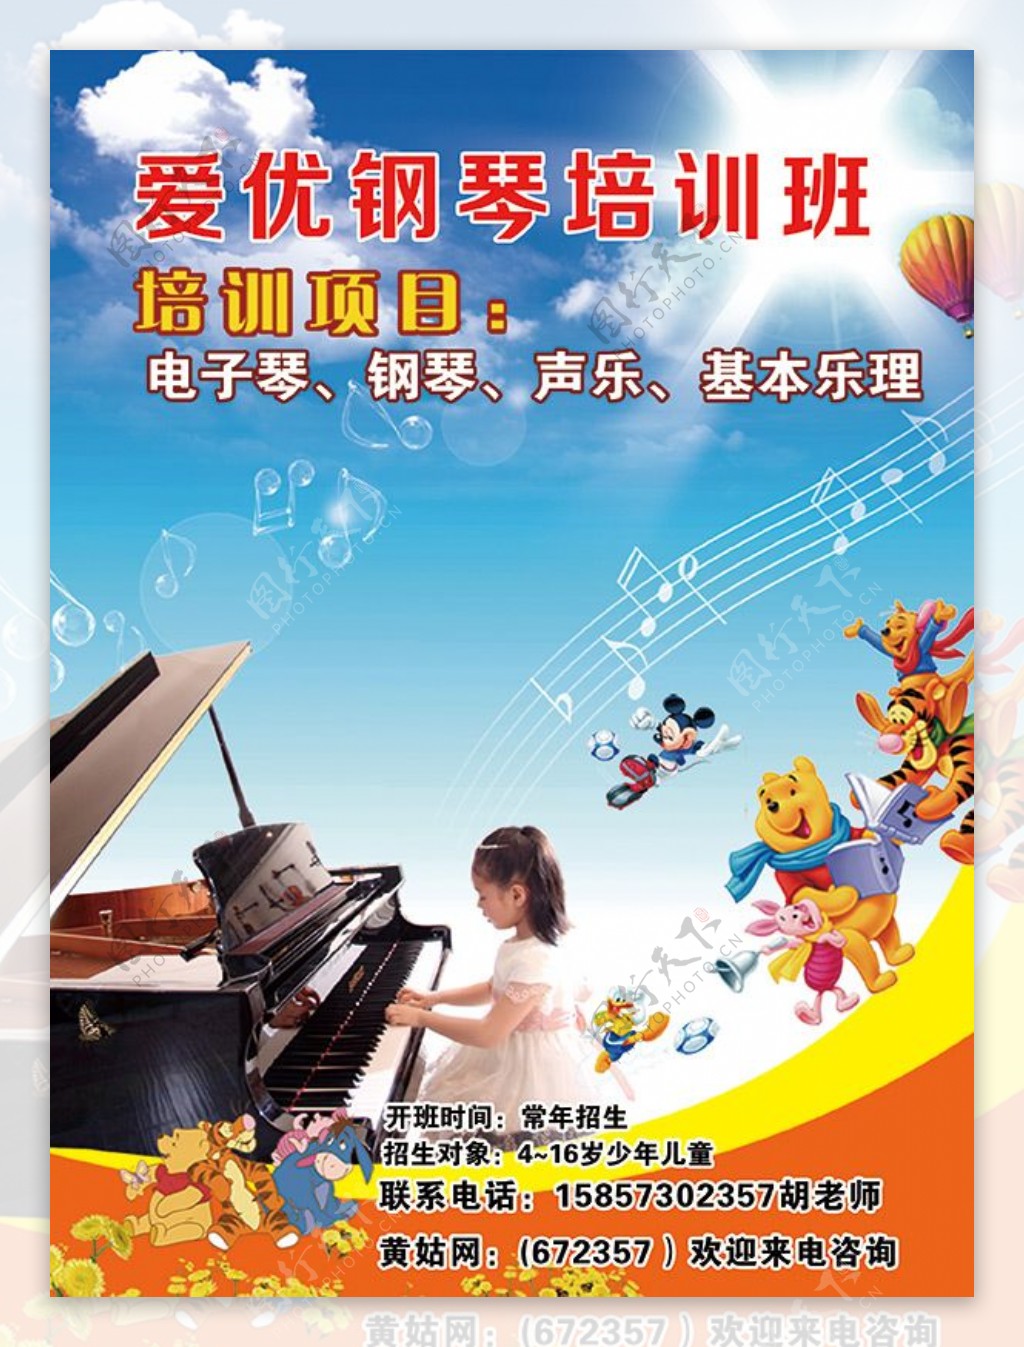 少儿钢琴班招生简章宣传广告PSD